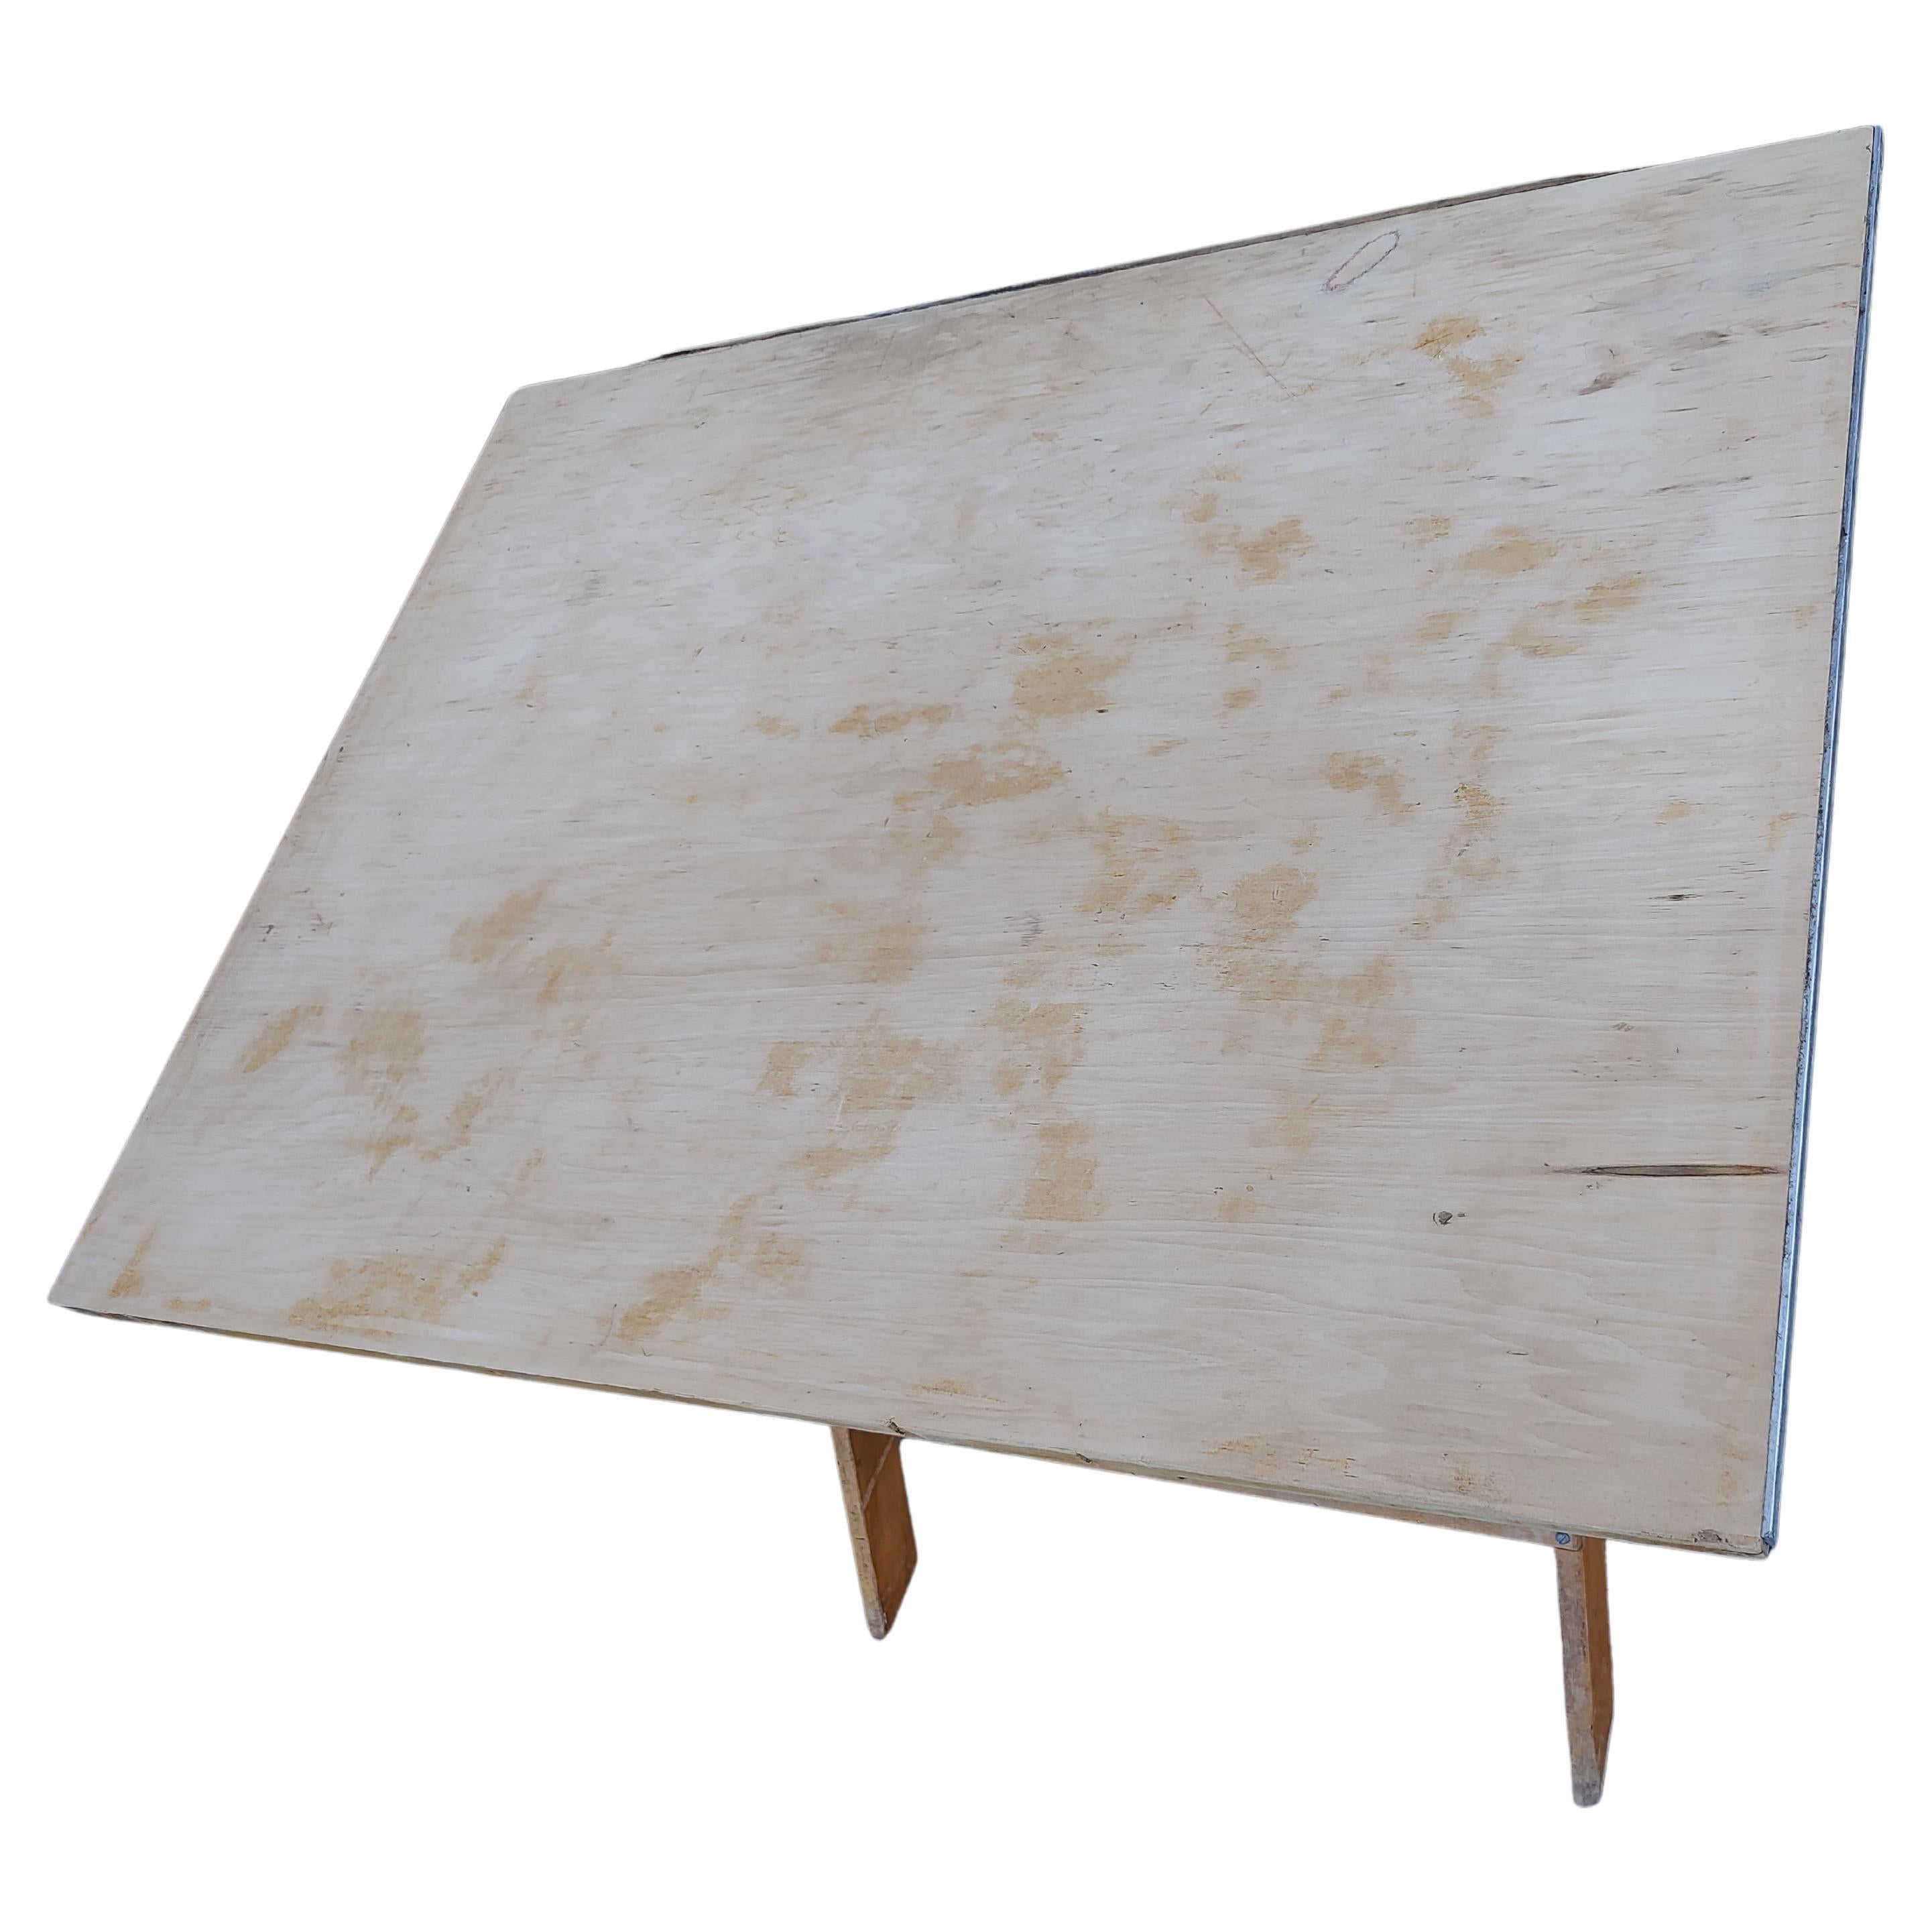 Gut konstruierter Zeichentisch aus Ahornholz aus den sechziger Jahren. Erreicht eine Höhe von 41,5 und einen Tiefstwert von 30,5. Hat eine abgenutzte Stelle auf der Oberfläche, abgebildet, die nicht beeinträchtigt es ist zu verwenden. In